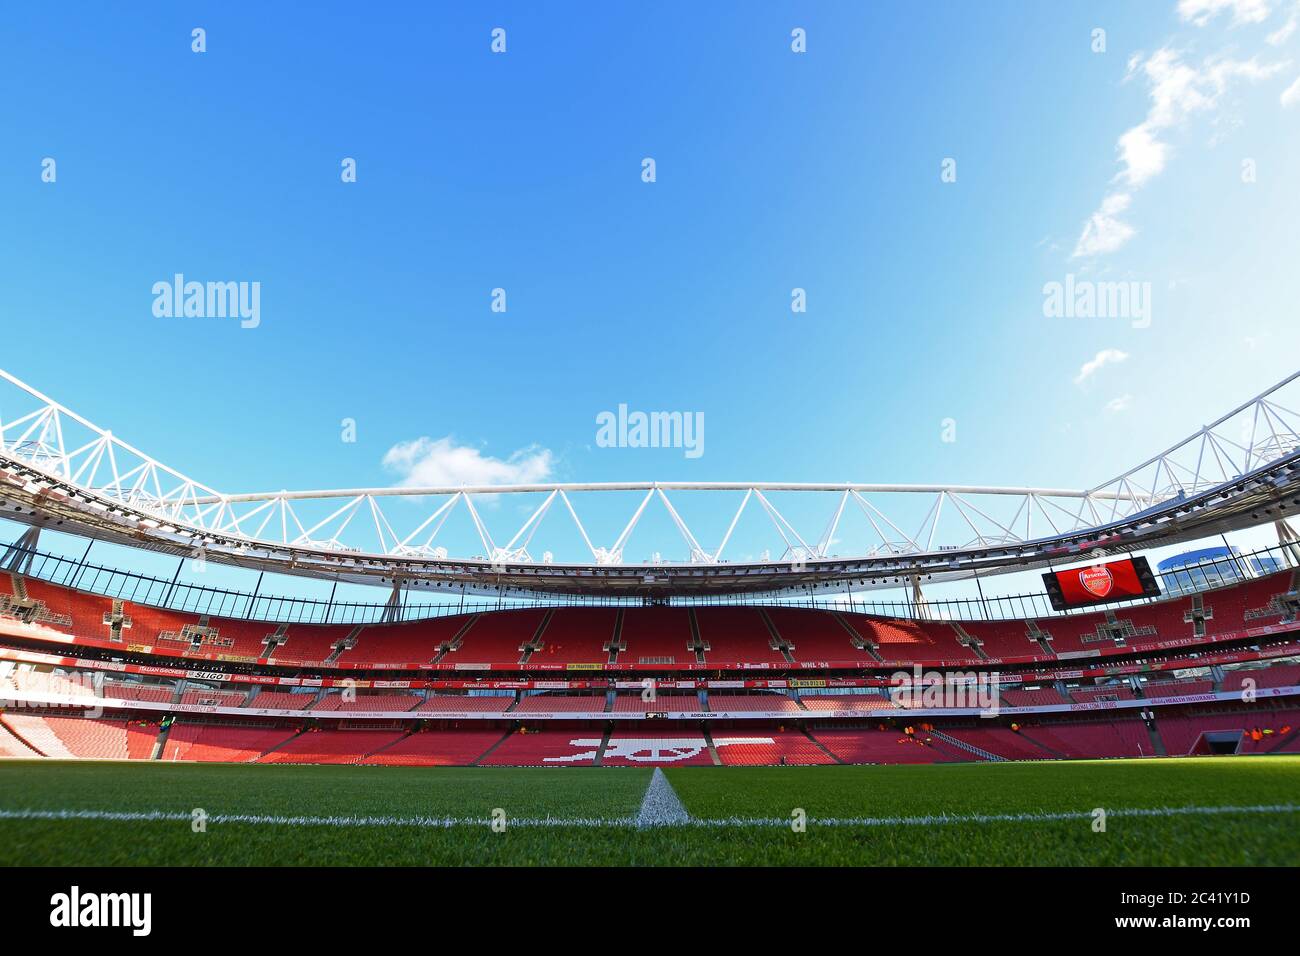 Londres, Inglaterra - Enero 18, 2020: Vista general del lugar visto por delante de la Premier League 2019/20 entre el Arsenal FC y el Sheffield United FC en el estadio Emirates. Foto de stock